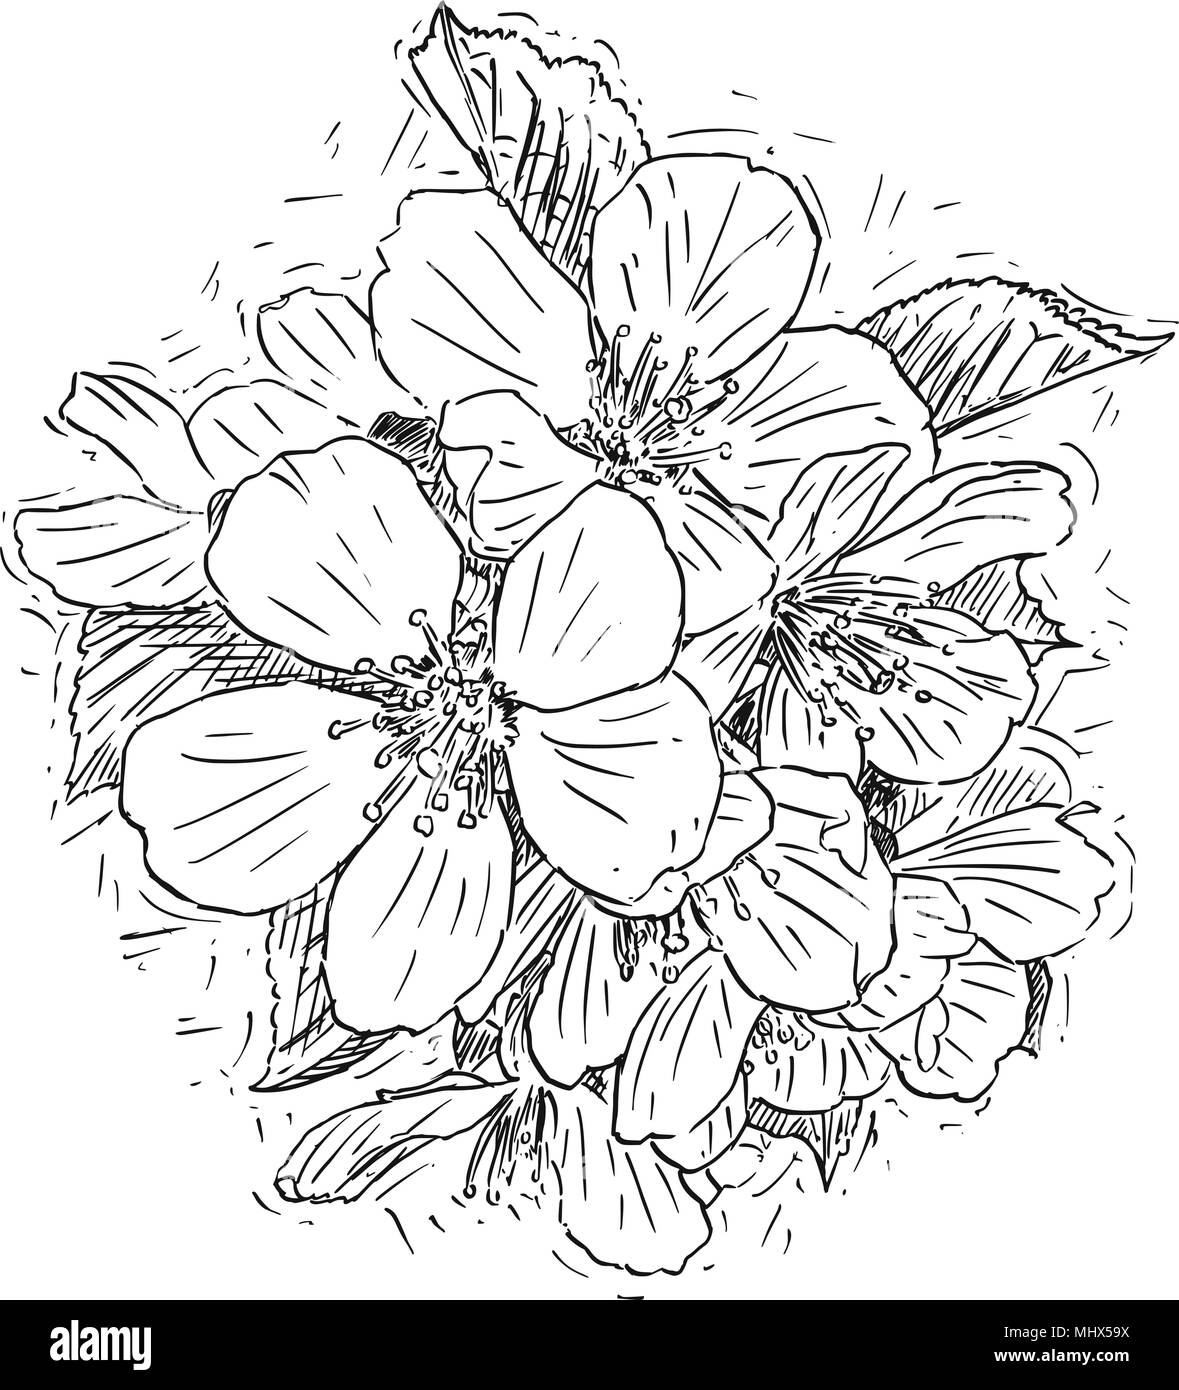 Vettore illustrazione artistica o disegno del mazzetto di fiori fiori di ciliegio Illustrazione Vettoriale